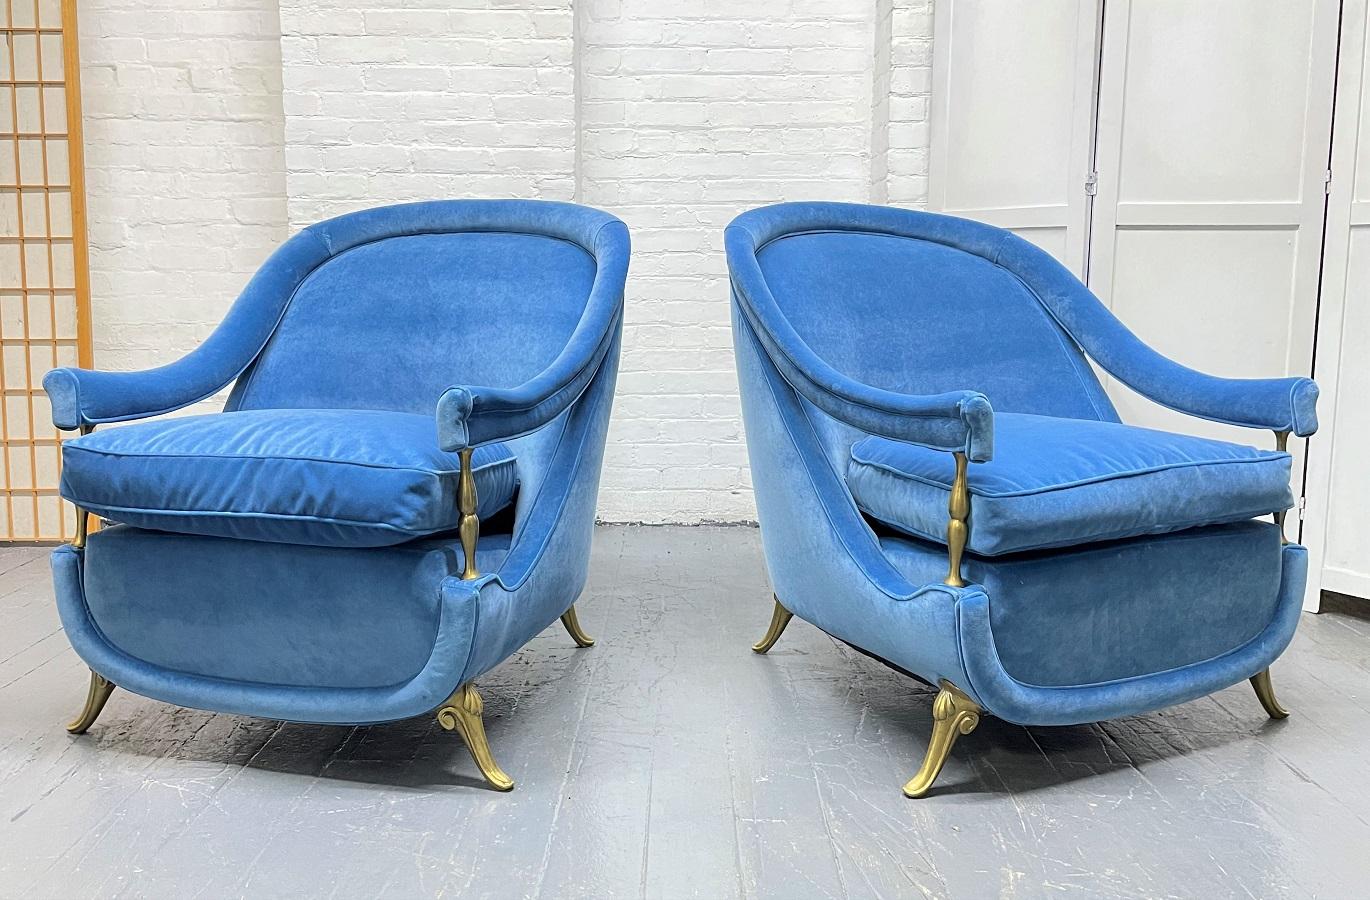 Paire de chaises longues en laiton et velours des années 1950. Les chaises sont recouvertes de velours bleu, ont un dossier arqué, des accoudoirs inclinés, des sièges à coussin lâche et des pieds en laiton.